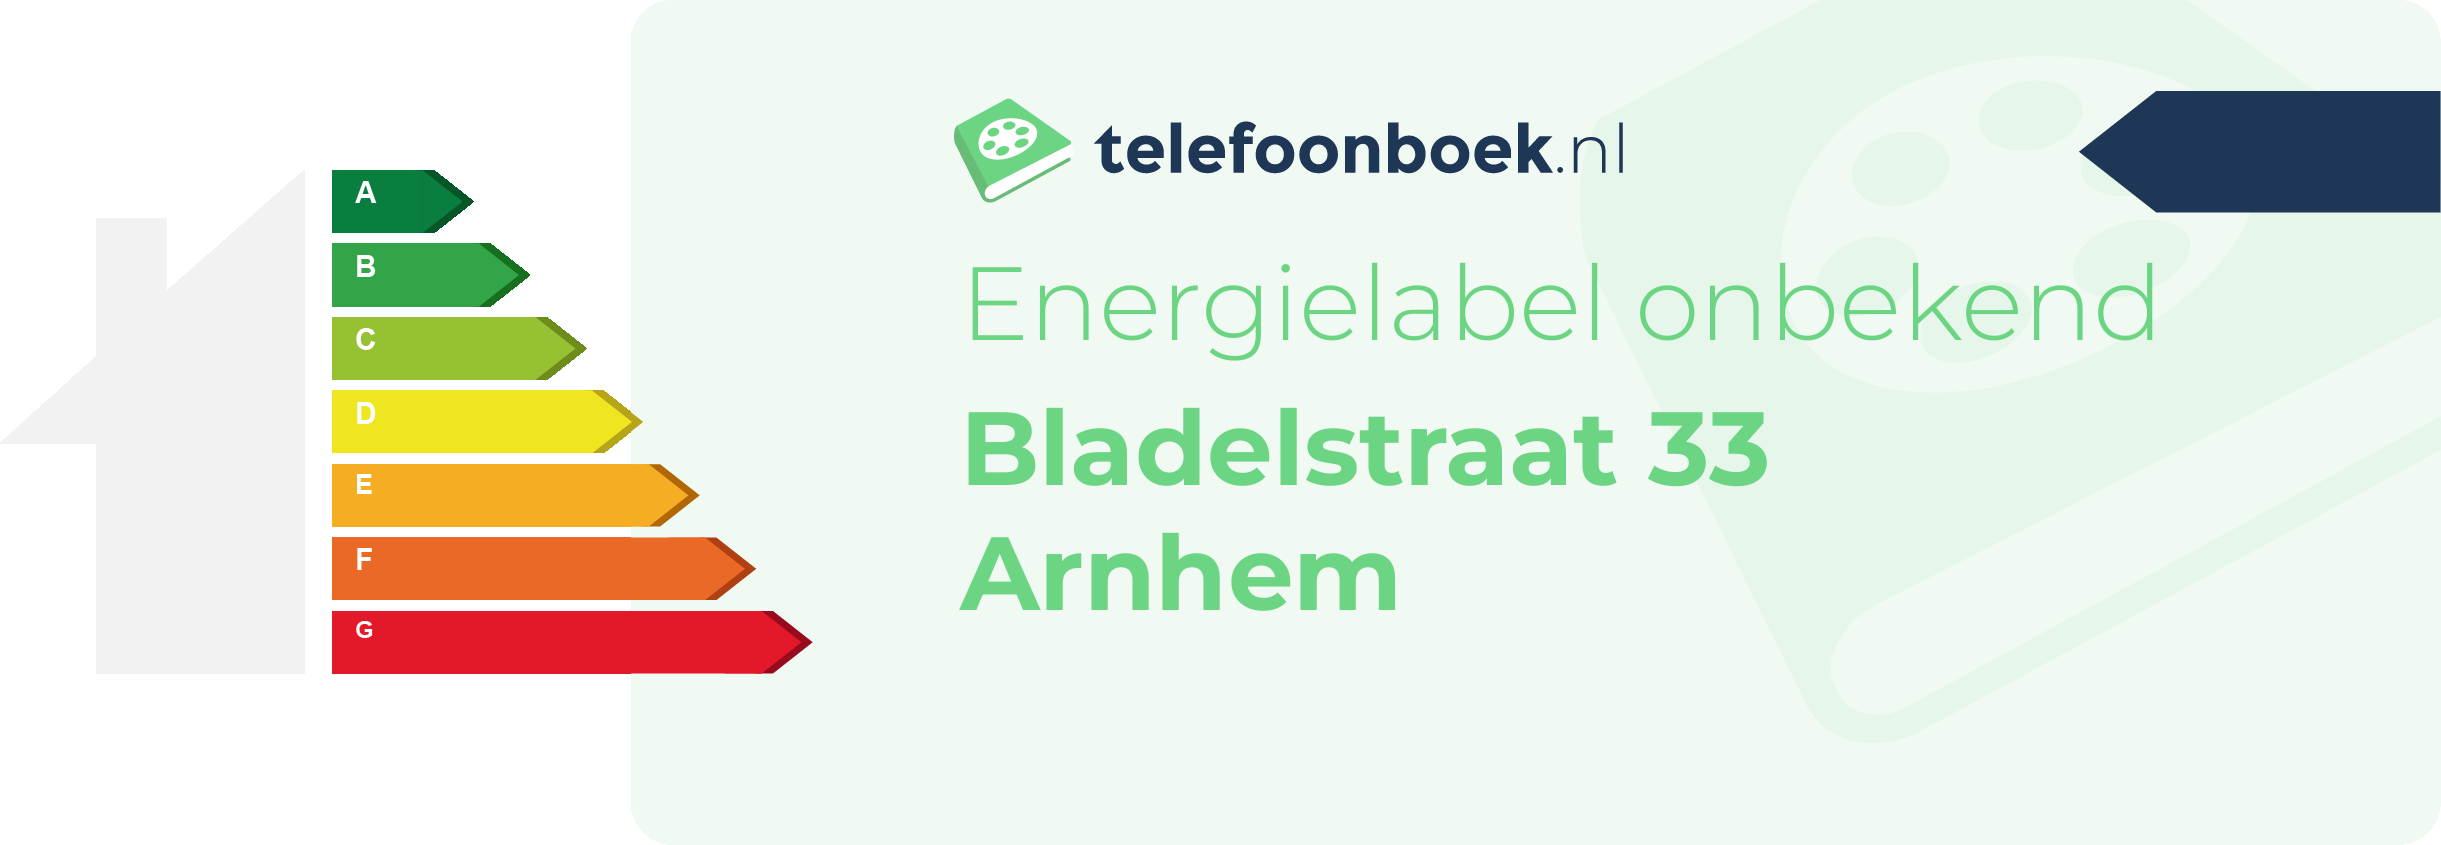 Energielabel Bladelstraat 33 Arnhem